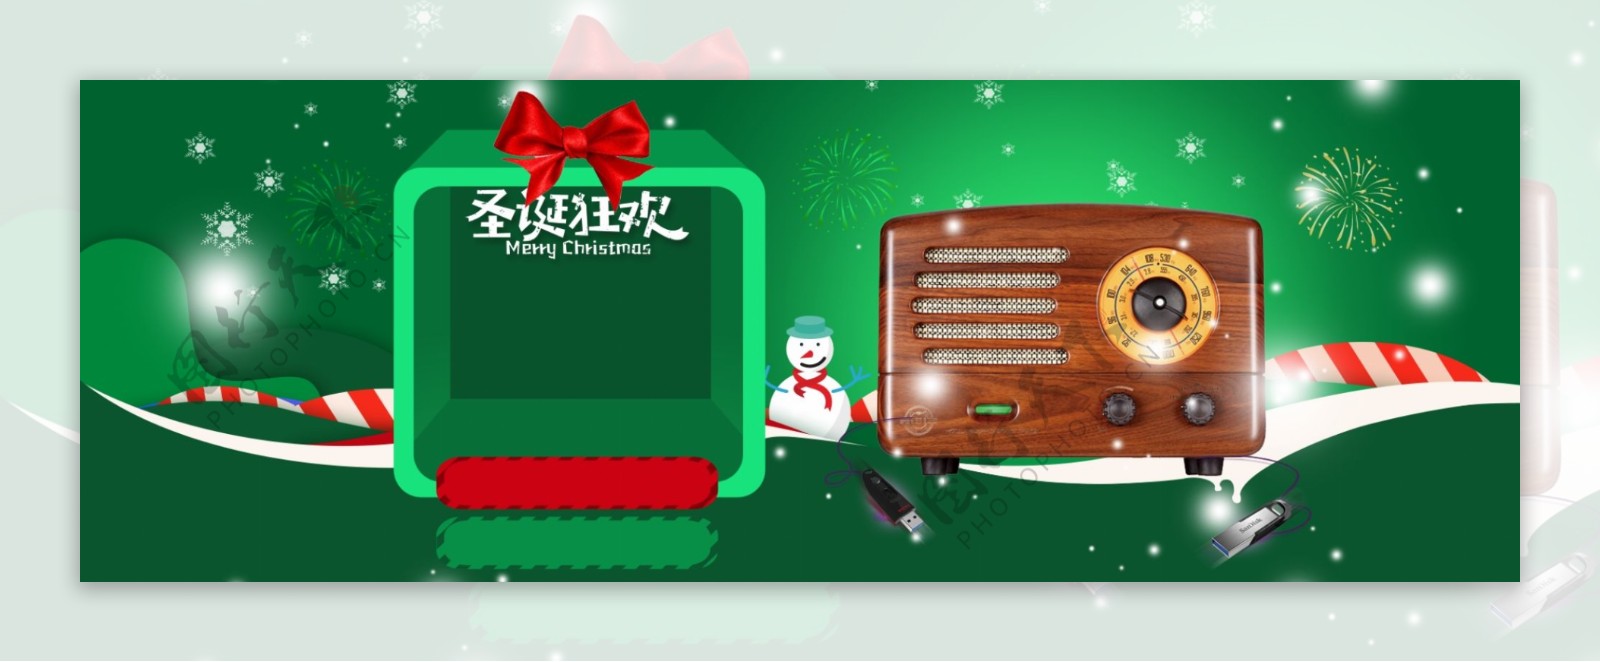 绿色雪松圣诞节卡通banner背景